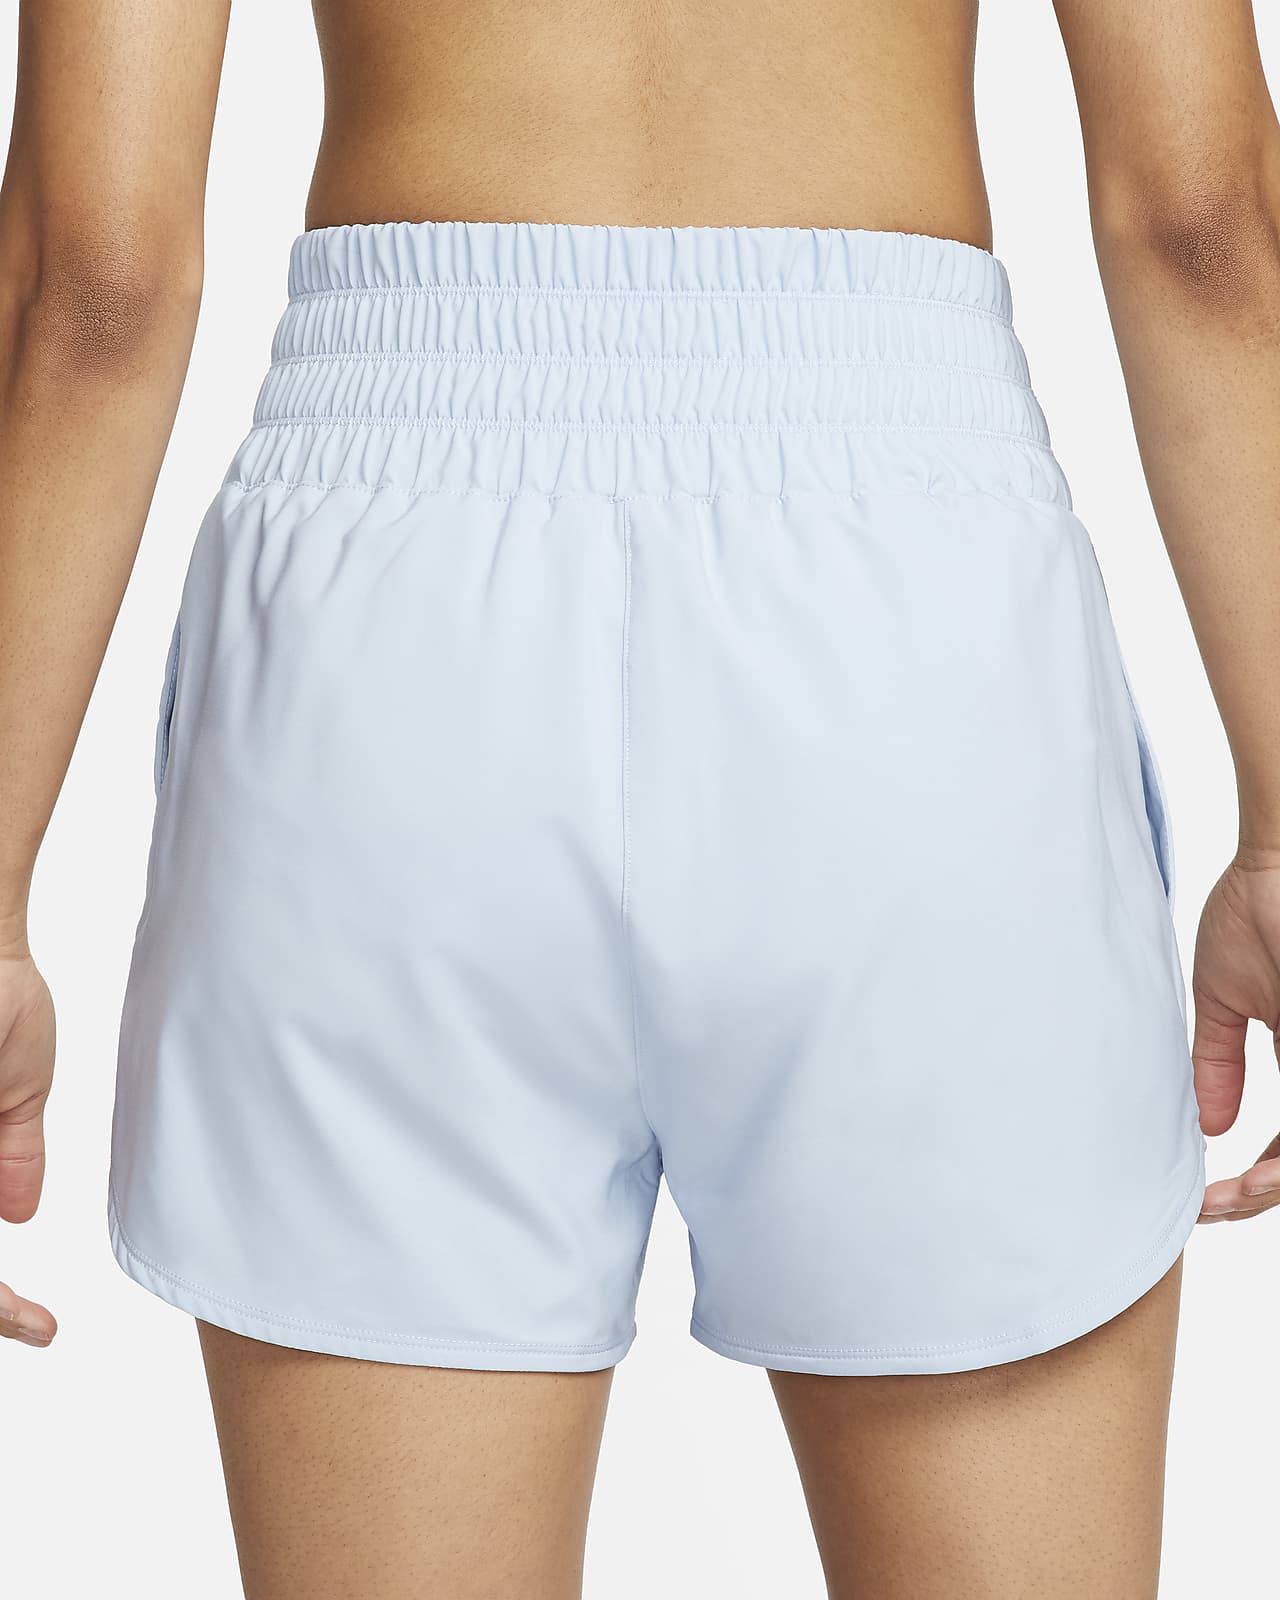 Girls Nike Swoosh Lined Underwear.